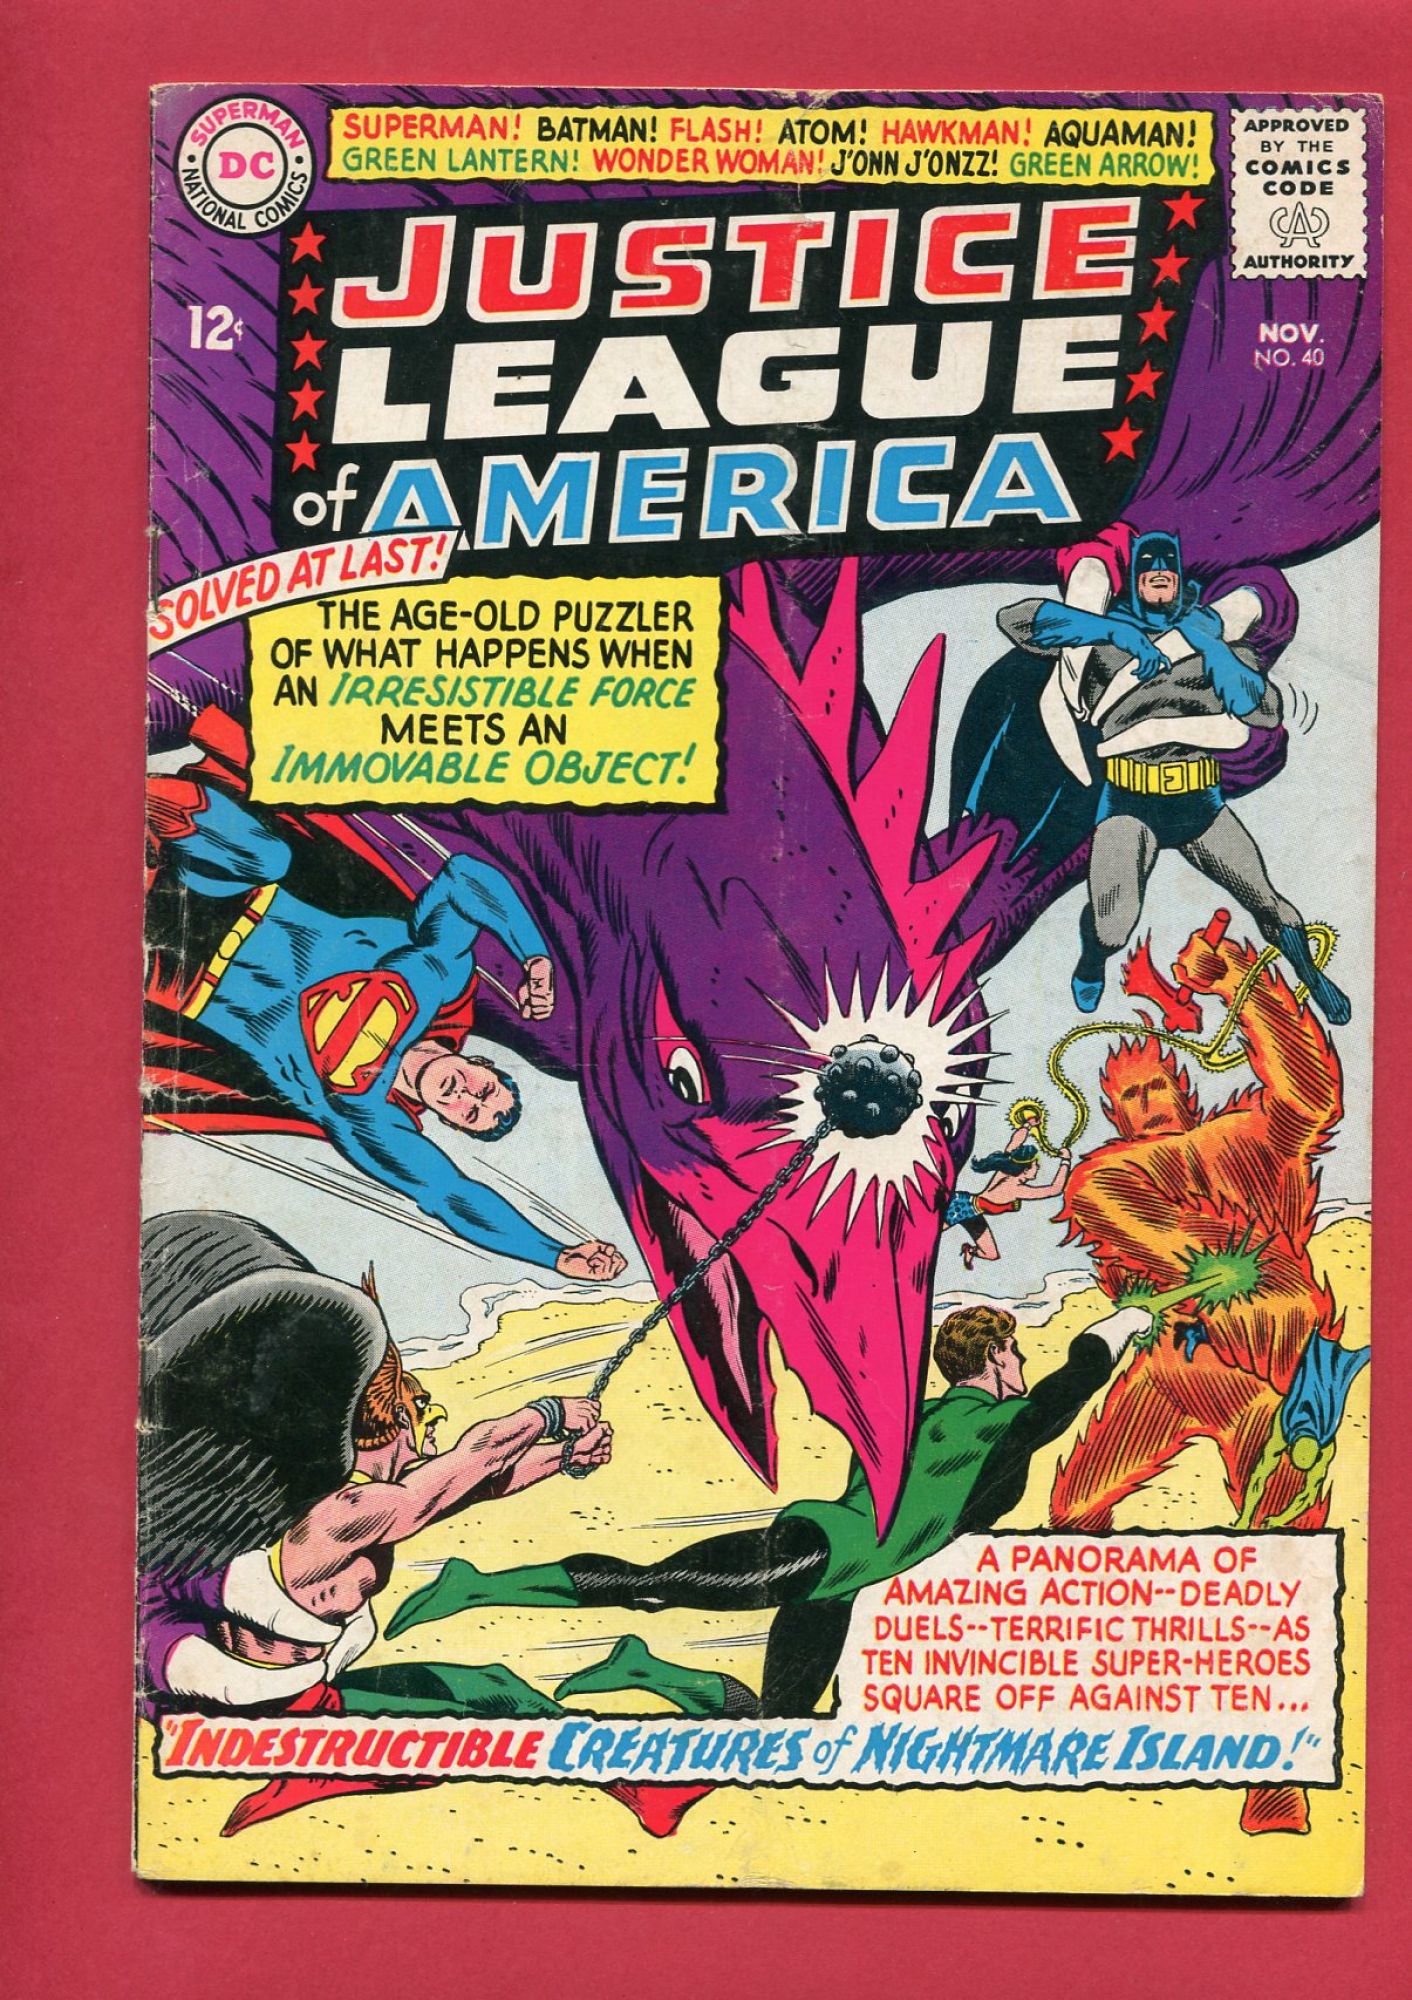 Justice League of America #40, Nov 1965, 4.0 VG